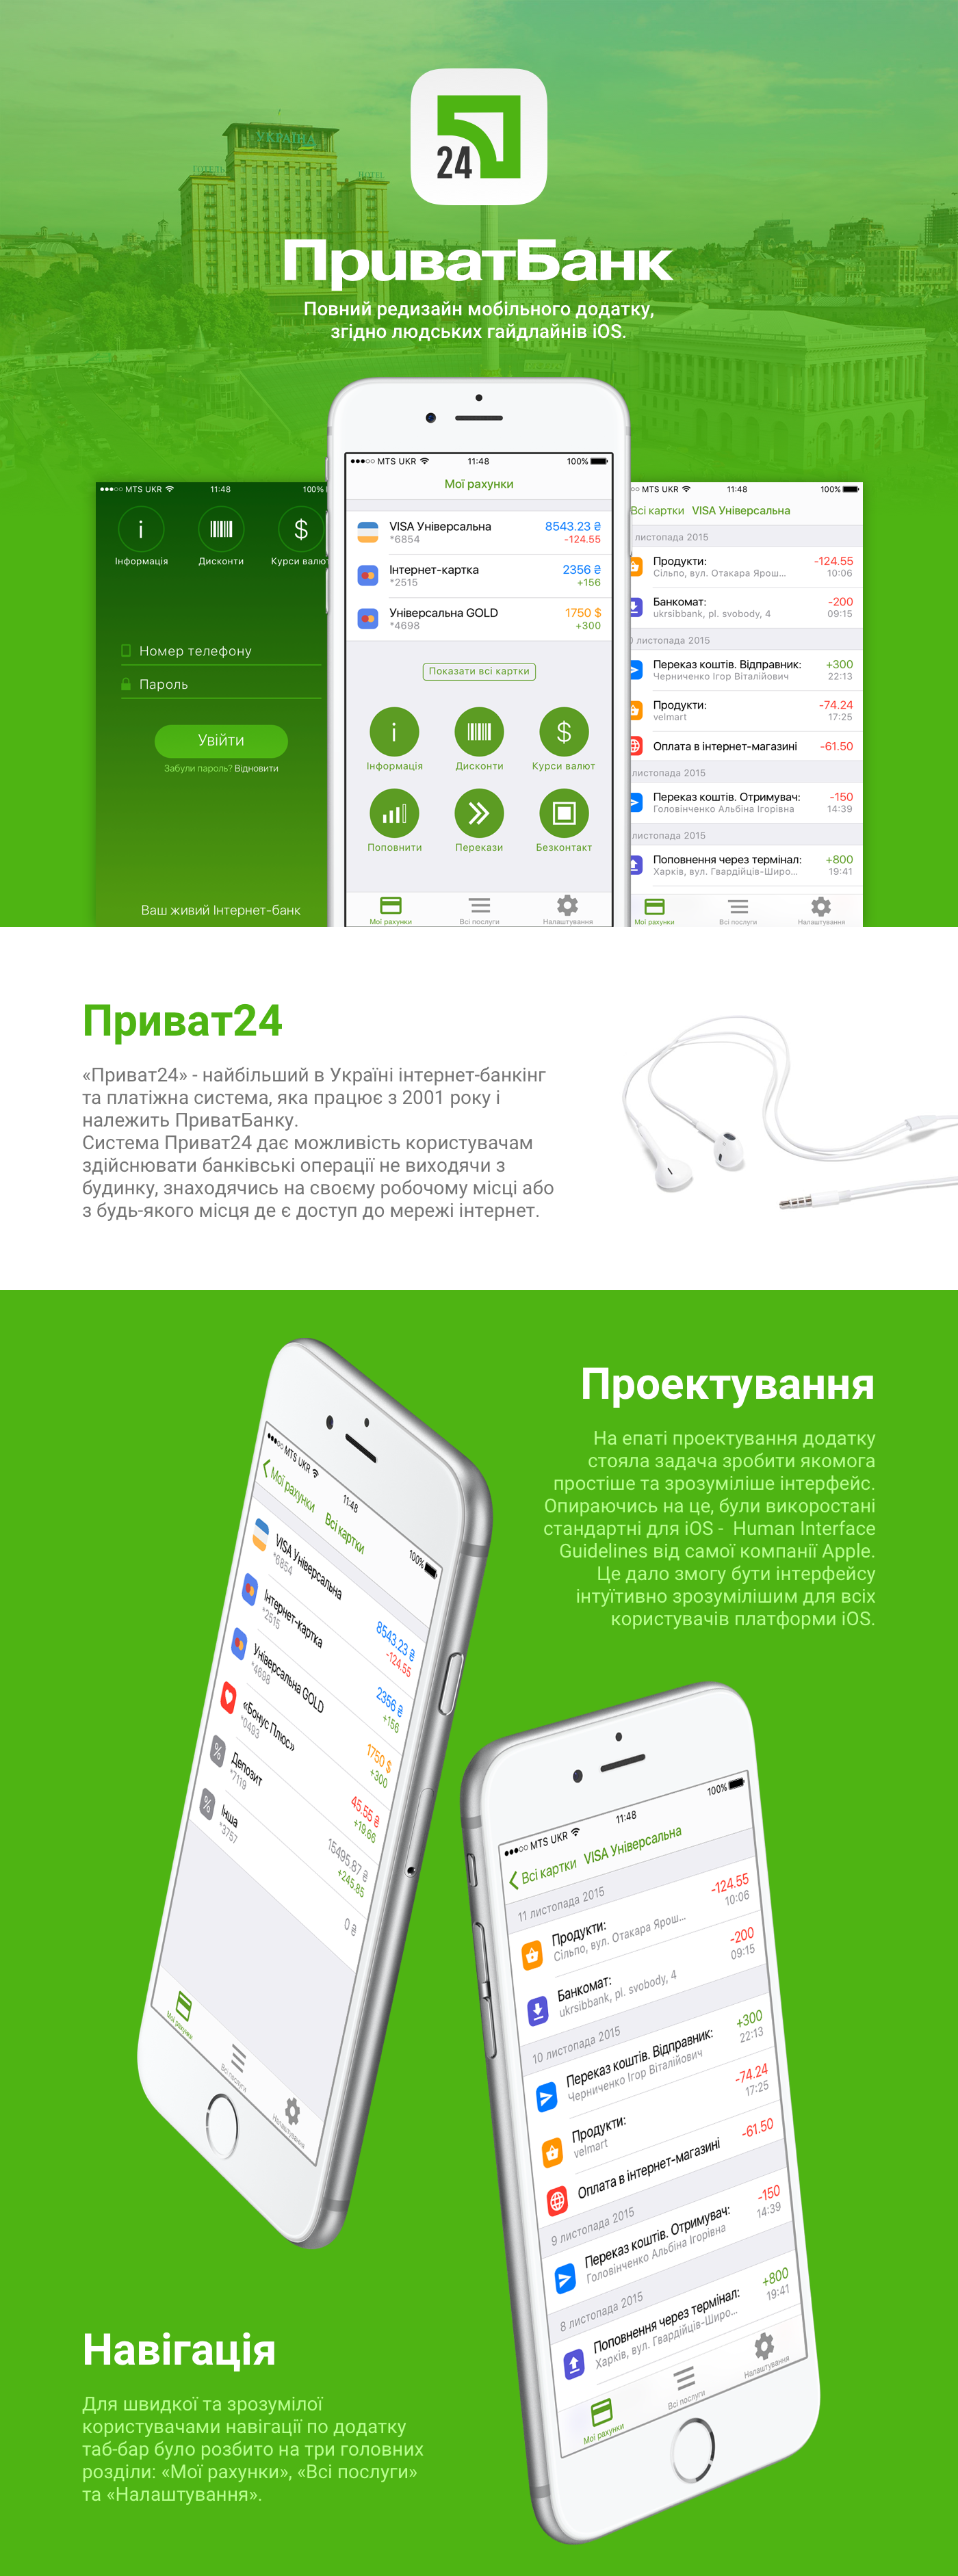 privatbank ПриватБанк mobile app design privat24 online user interface user experience UI ux ios sketch sketchapp online bank